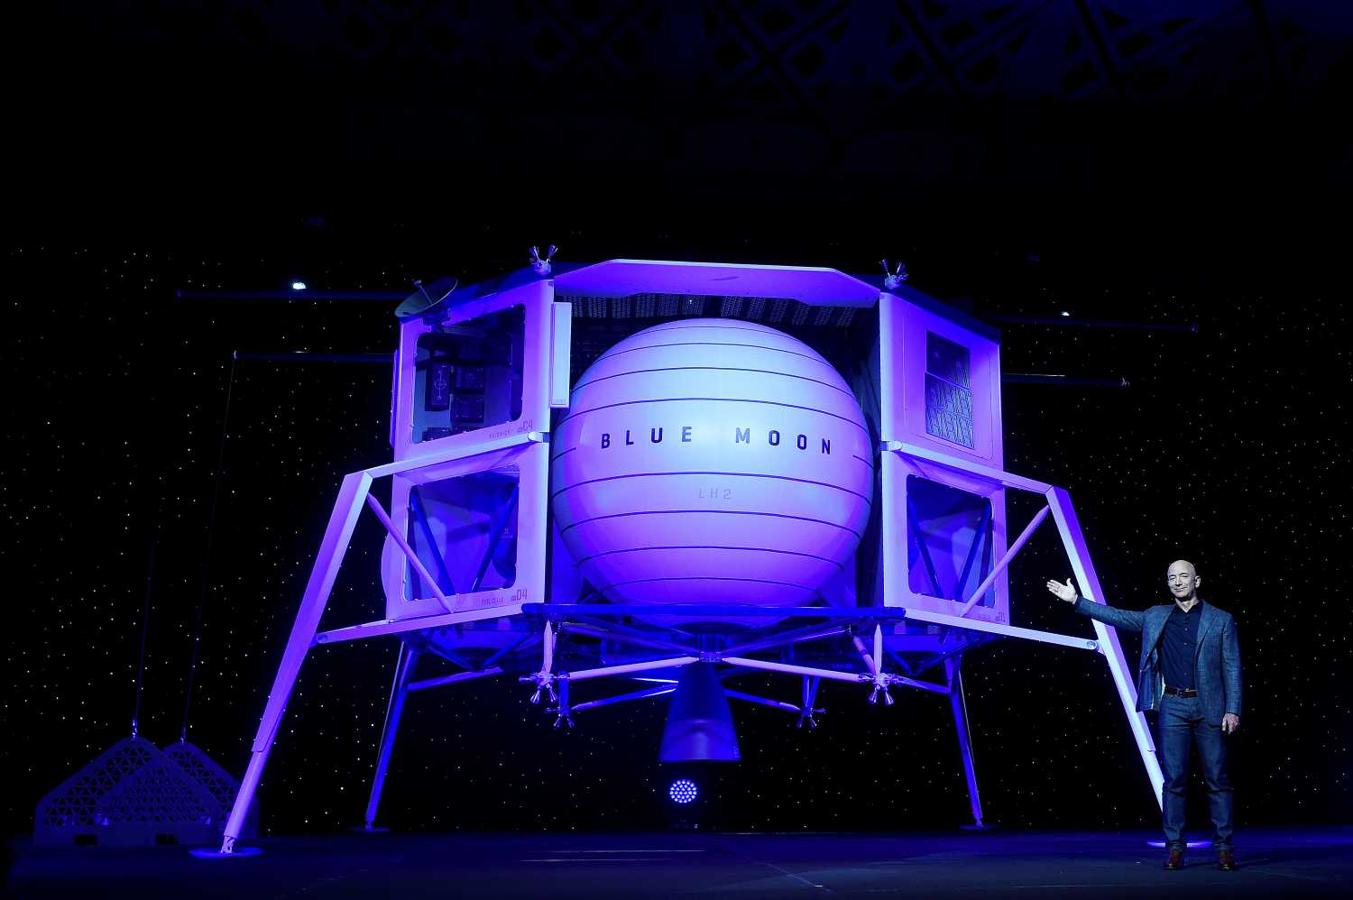 El fundador de Amazon, Jeff Bezos, presenta su cohete de exploración lunar de exploración espacial Blue Origin llamado Blue Moon 